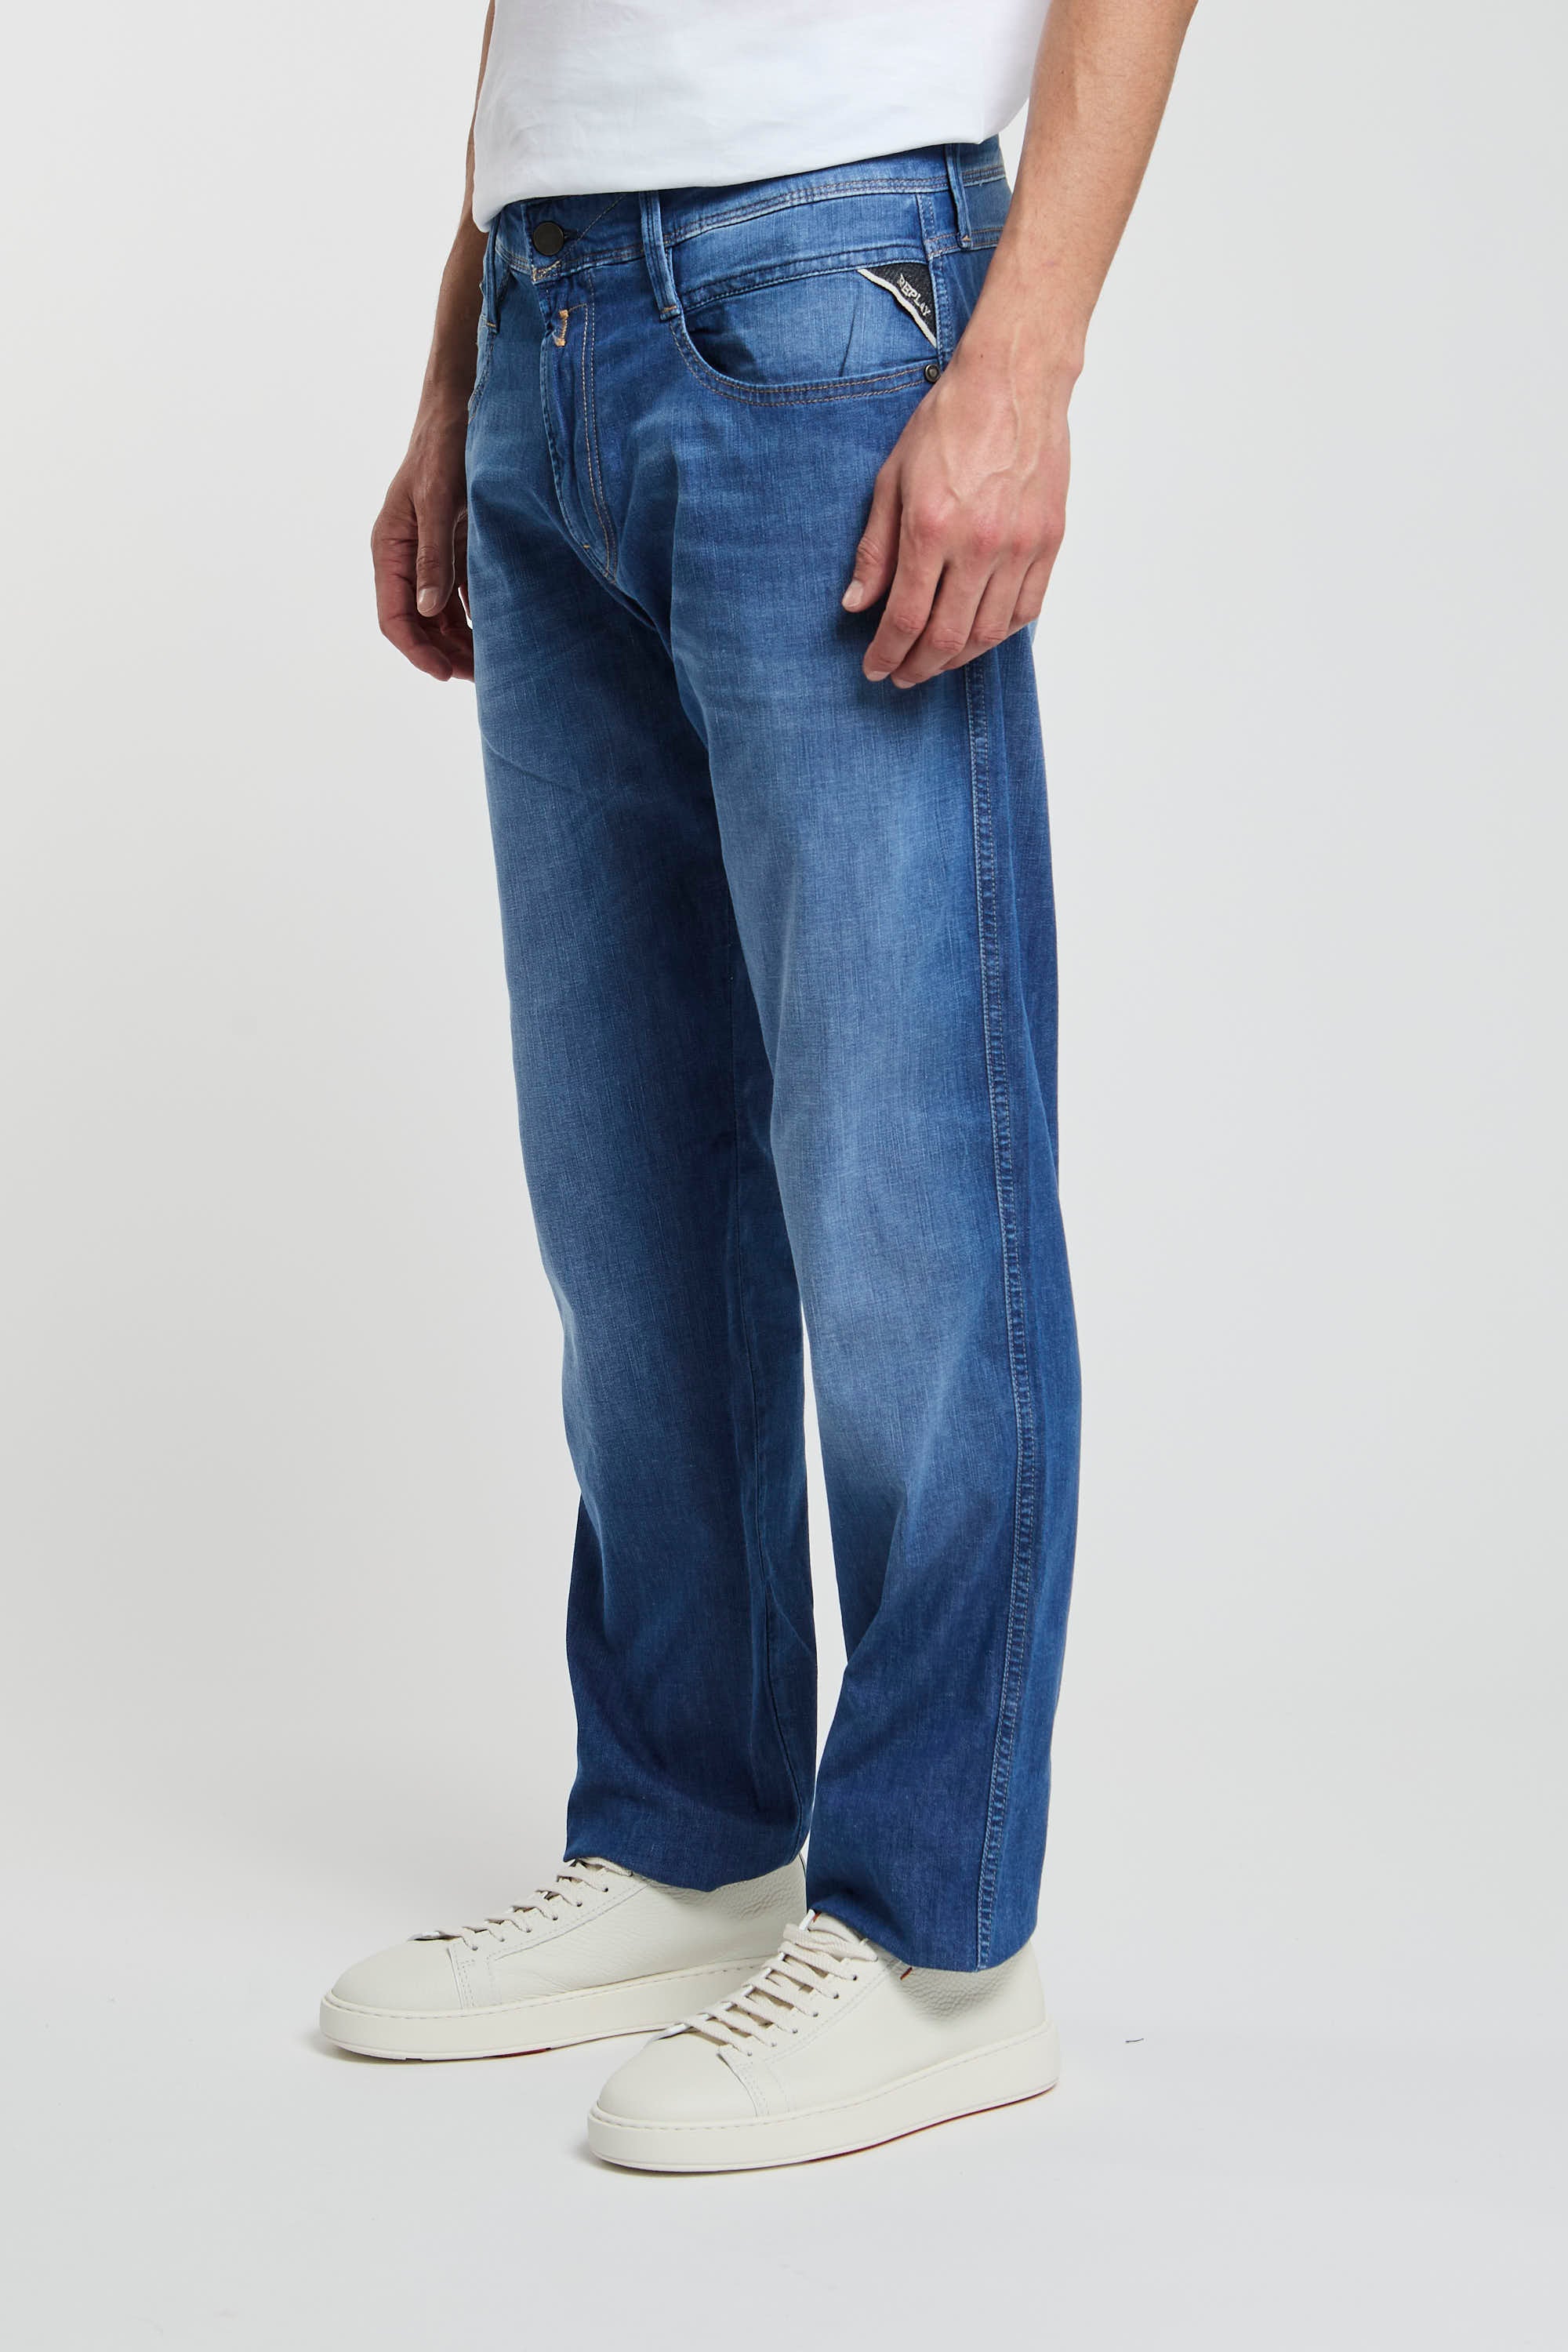 Replay Jeans Slim Fit aus Denim in Baumwolle/Lyocell/Elastomultiester/Elasthan-4